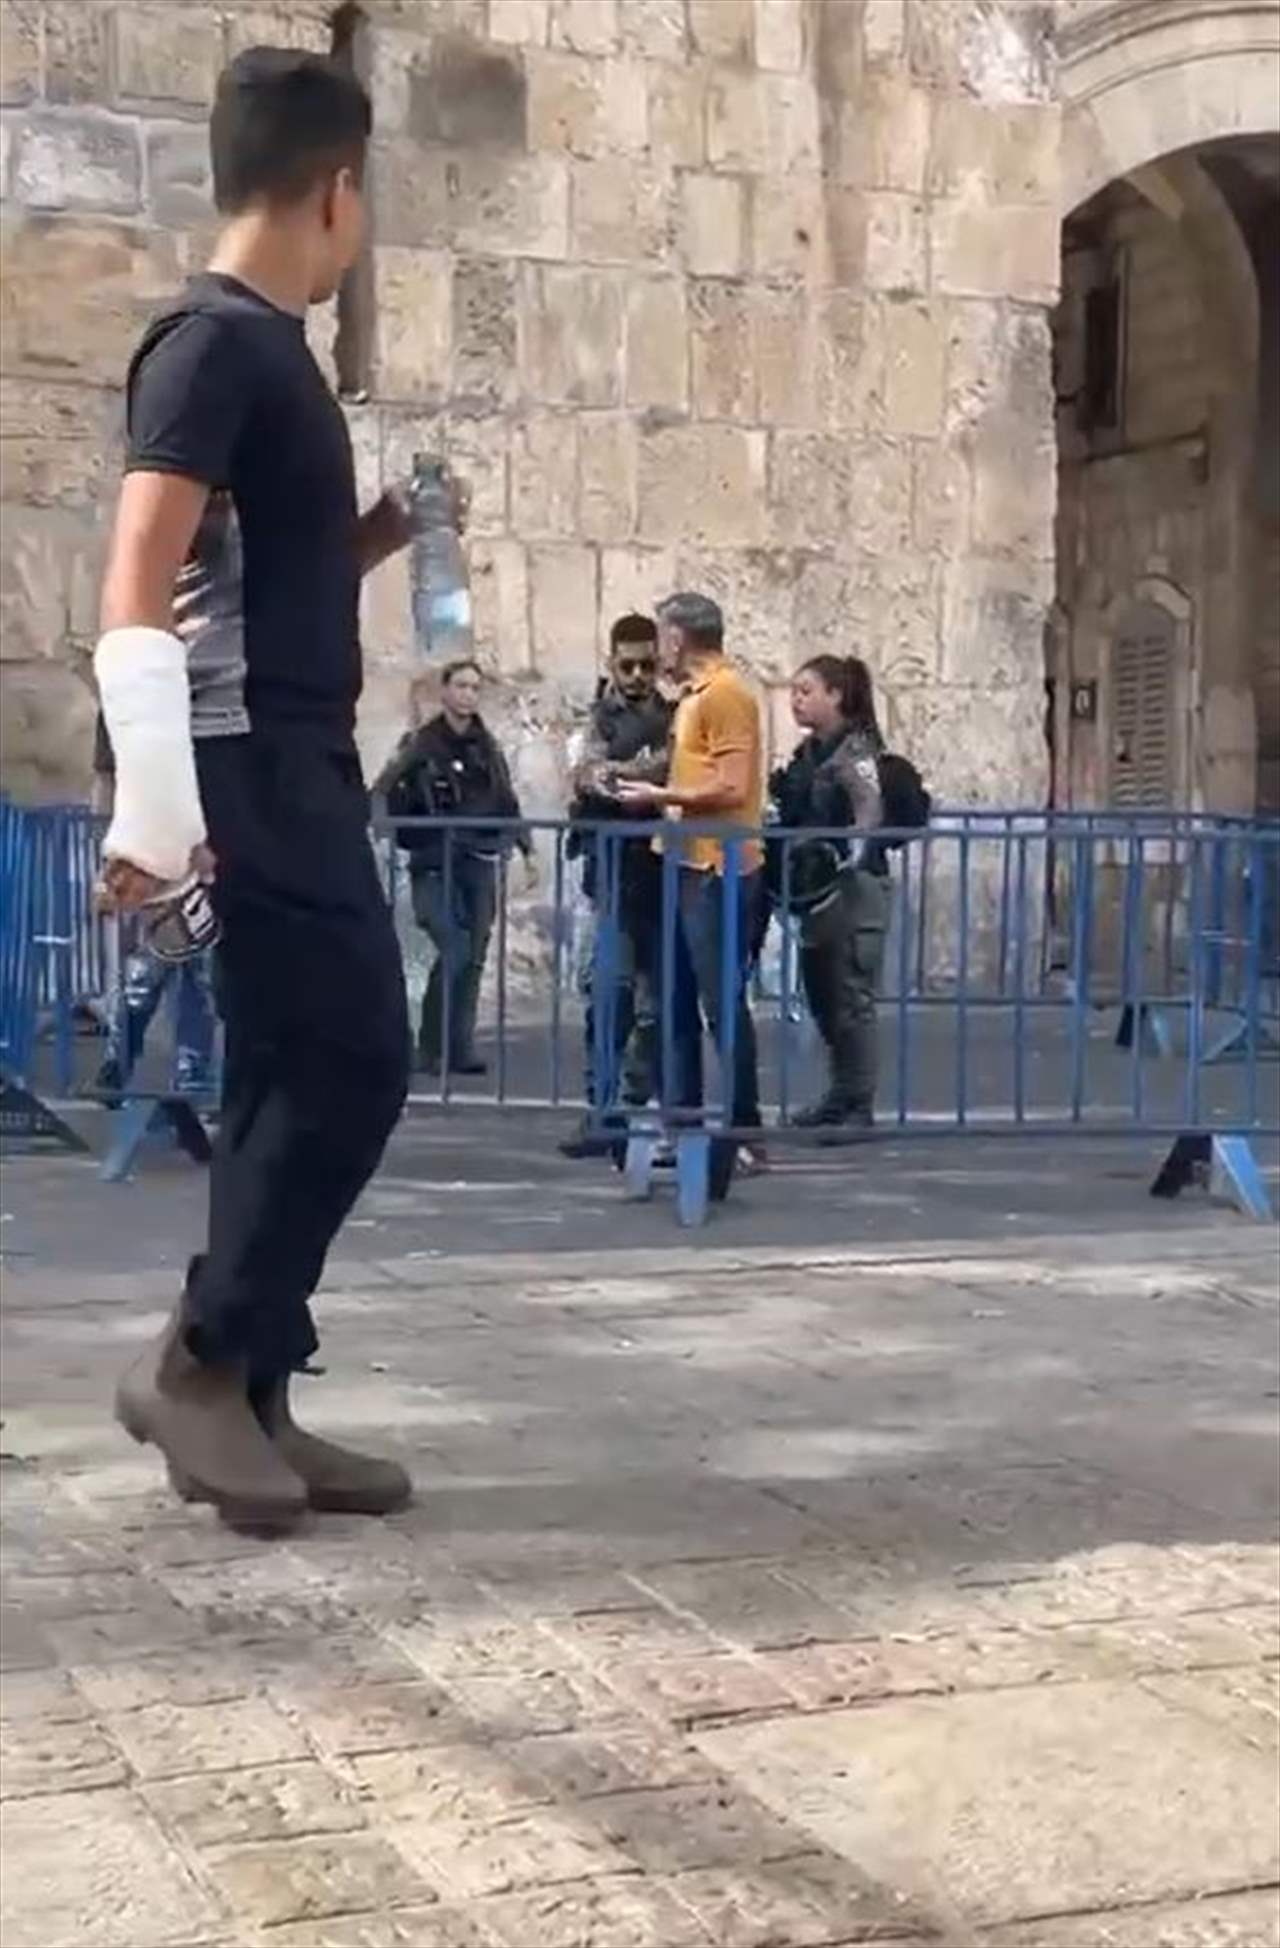 بالفيديو - جيش الإحتلال يعتدي على الفلسطينيين عند حواجز البلدة القديمة لمنعهم من الوصول للمسجد الأقصى